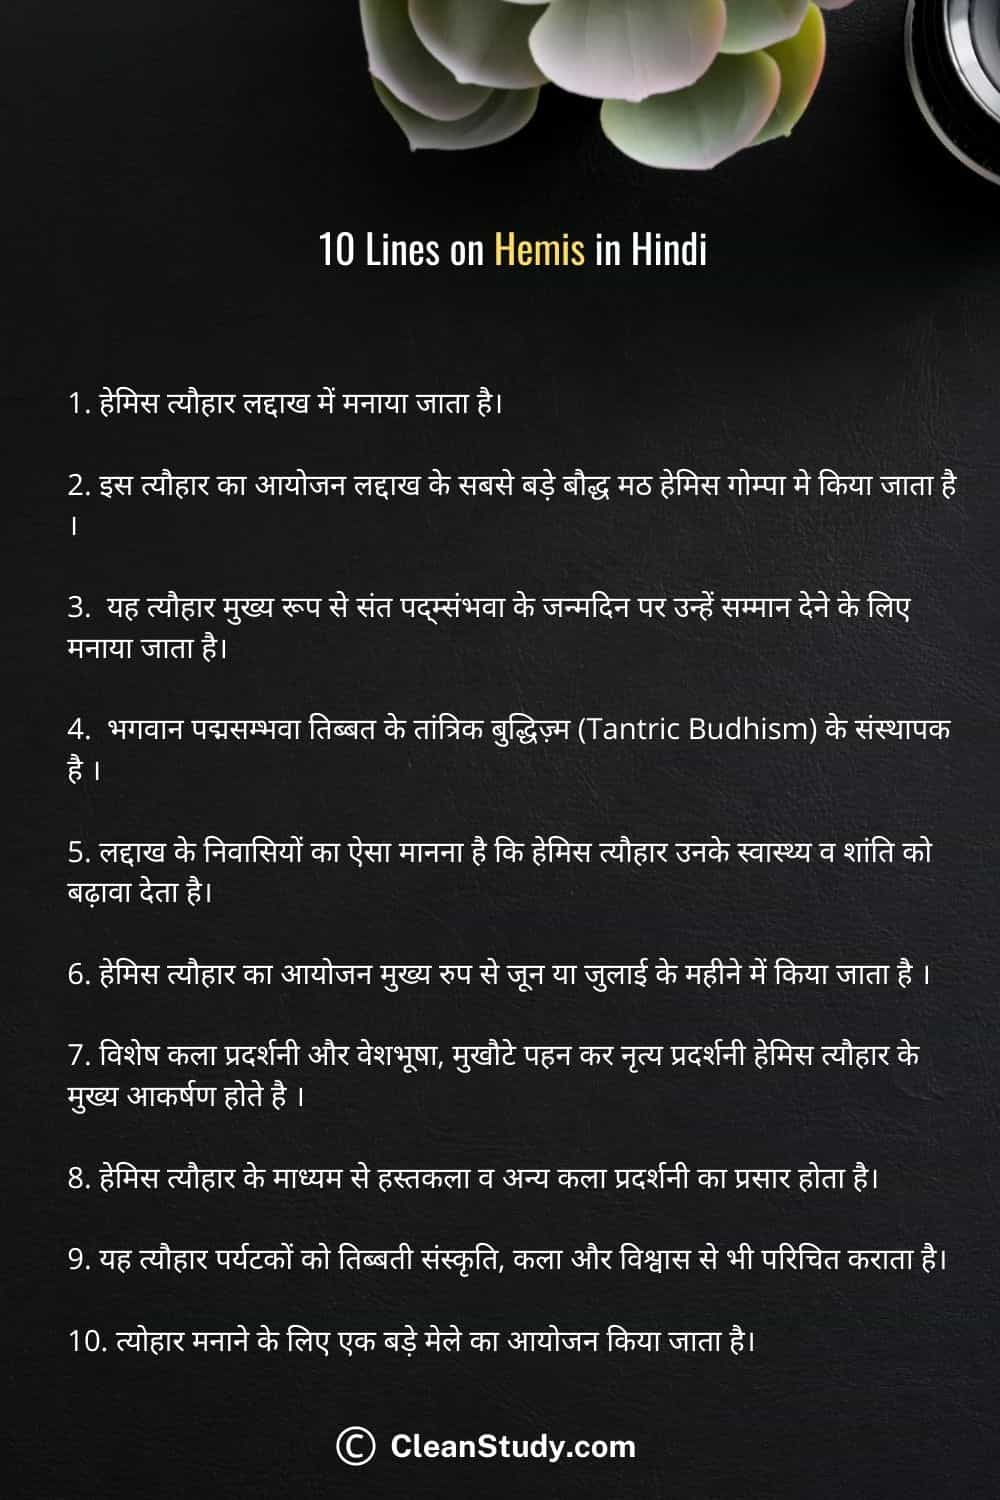 10 lines on Hemis in hindi